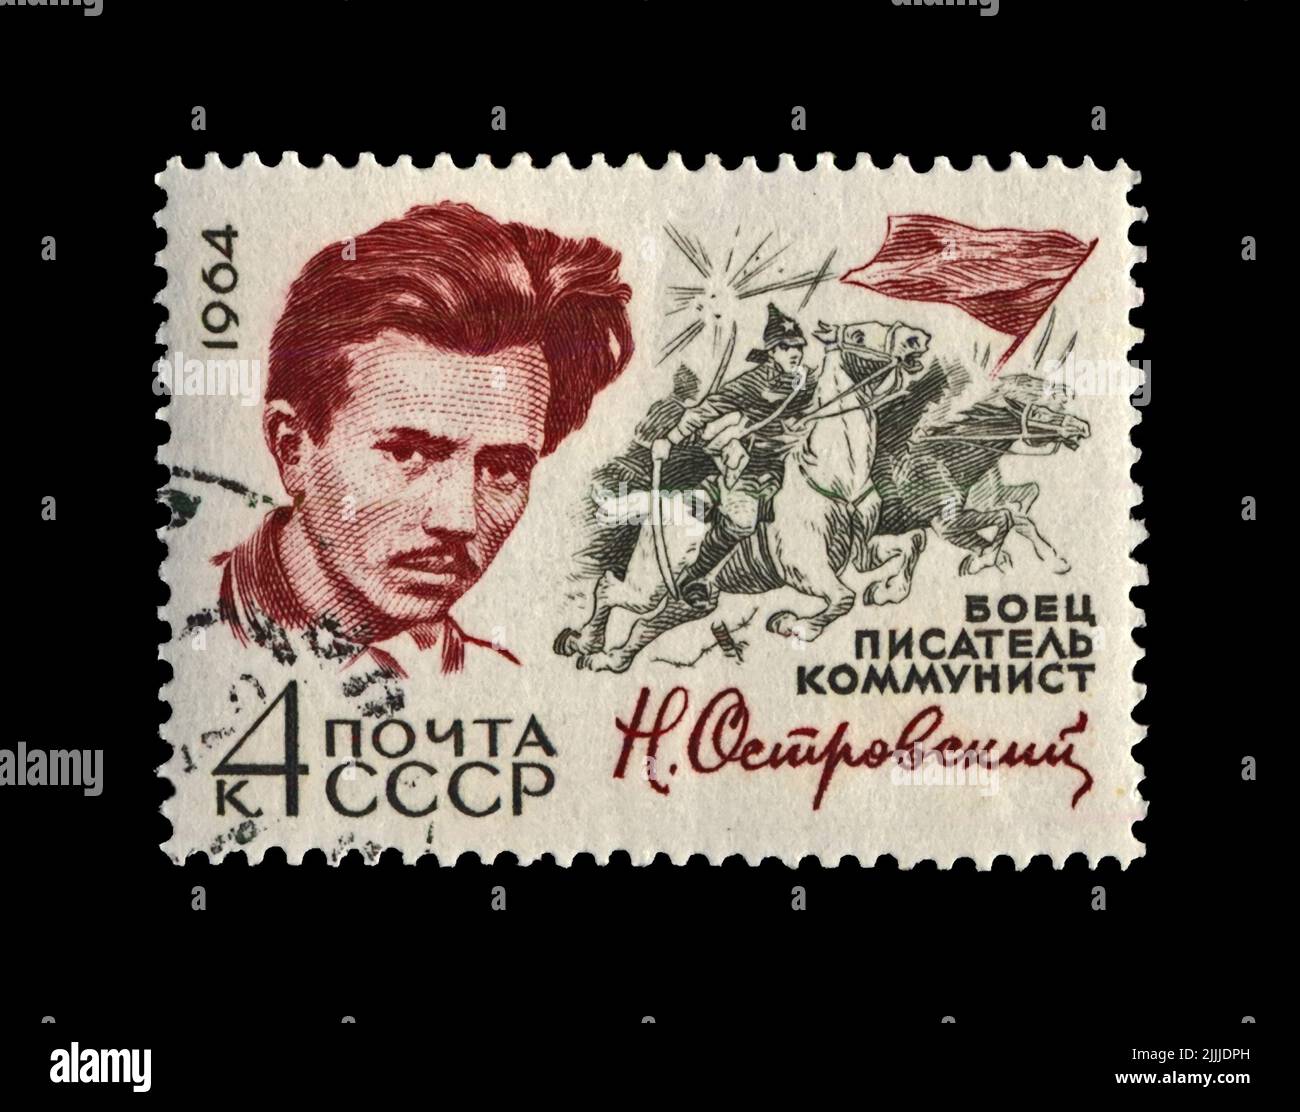 Nikolai Ostrovsky (1904-1936), famoso scrittore russo commissar, circa 1971. Timbro cancellato stampato in URSS Foto Stock